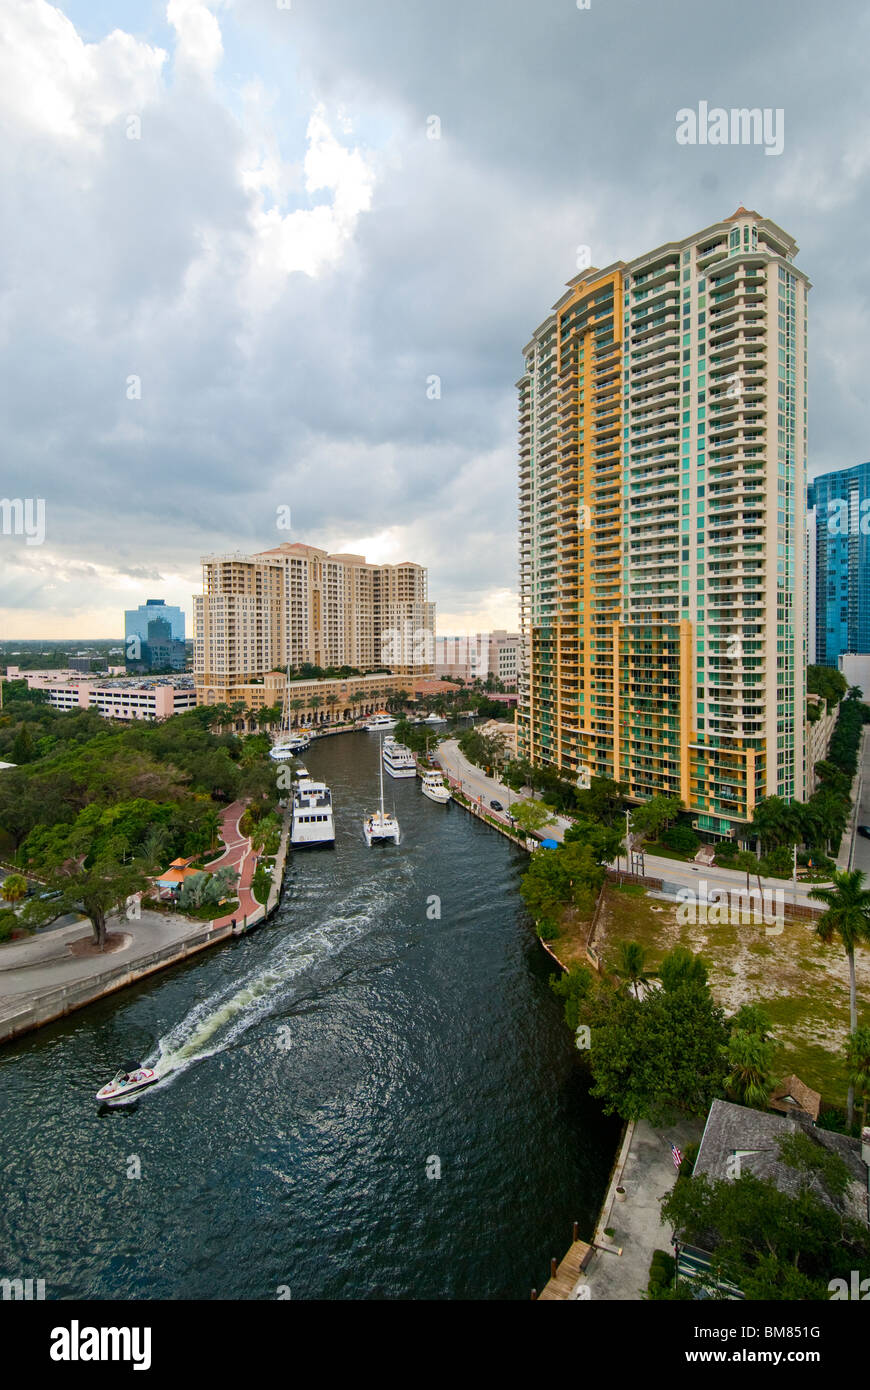 El nuevo río pasa por el centro de la ciudad de Fort Lauderdale, Florida, EE.UU. Foto de stock